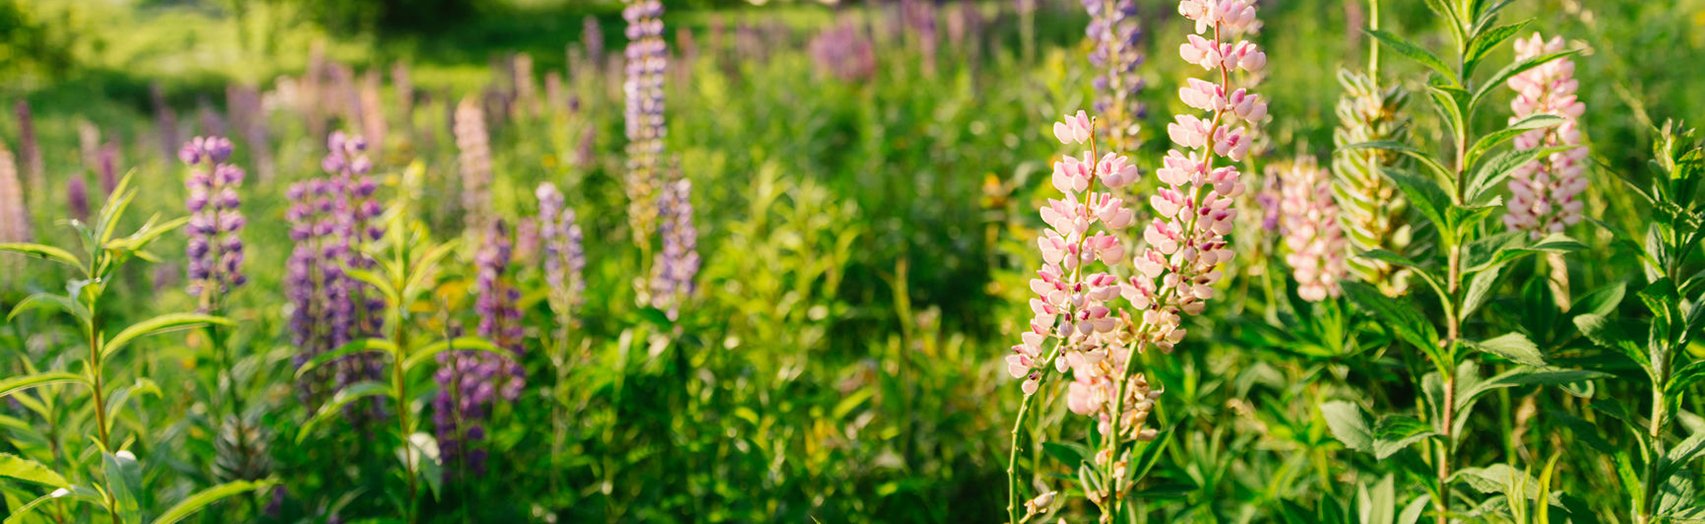 Vermont Lupine wildflowers in summer landscape